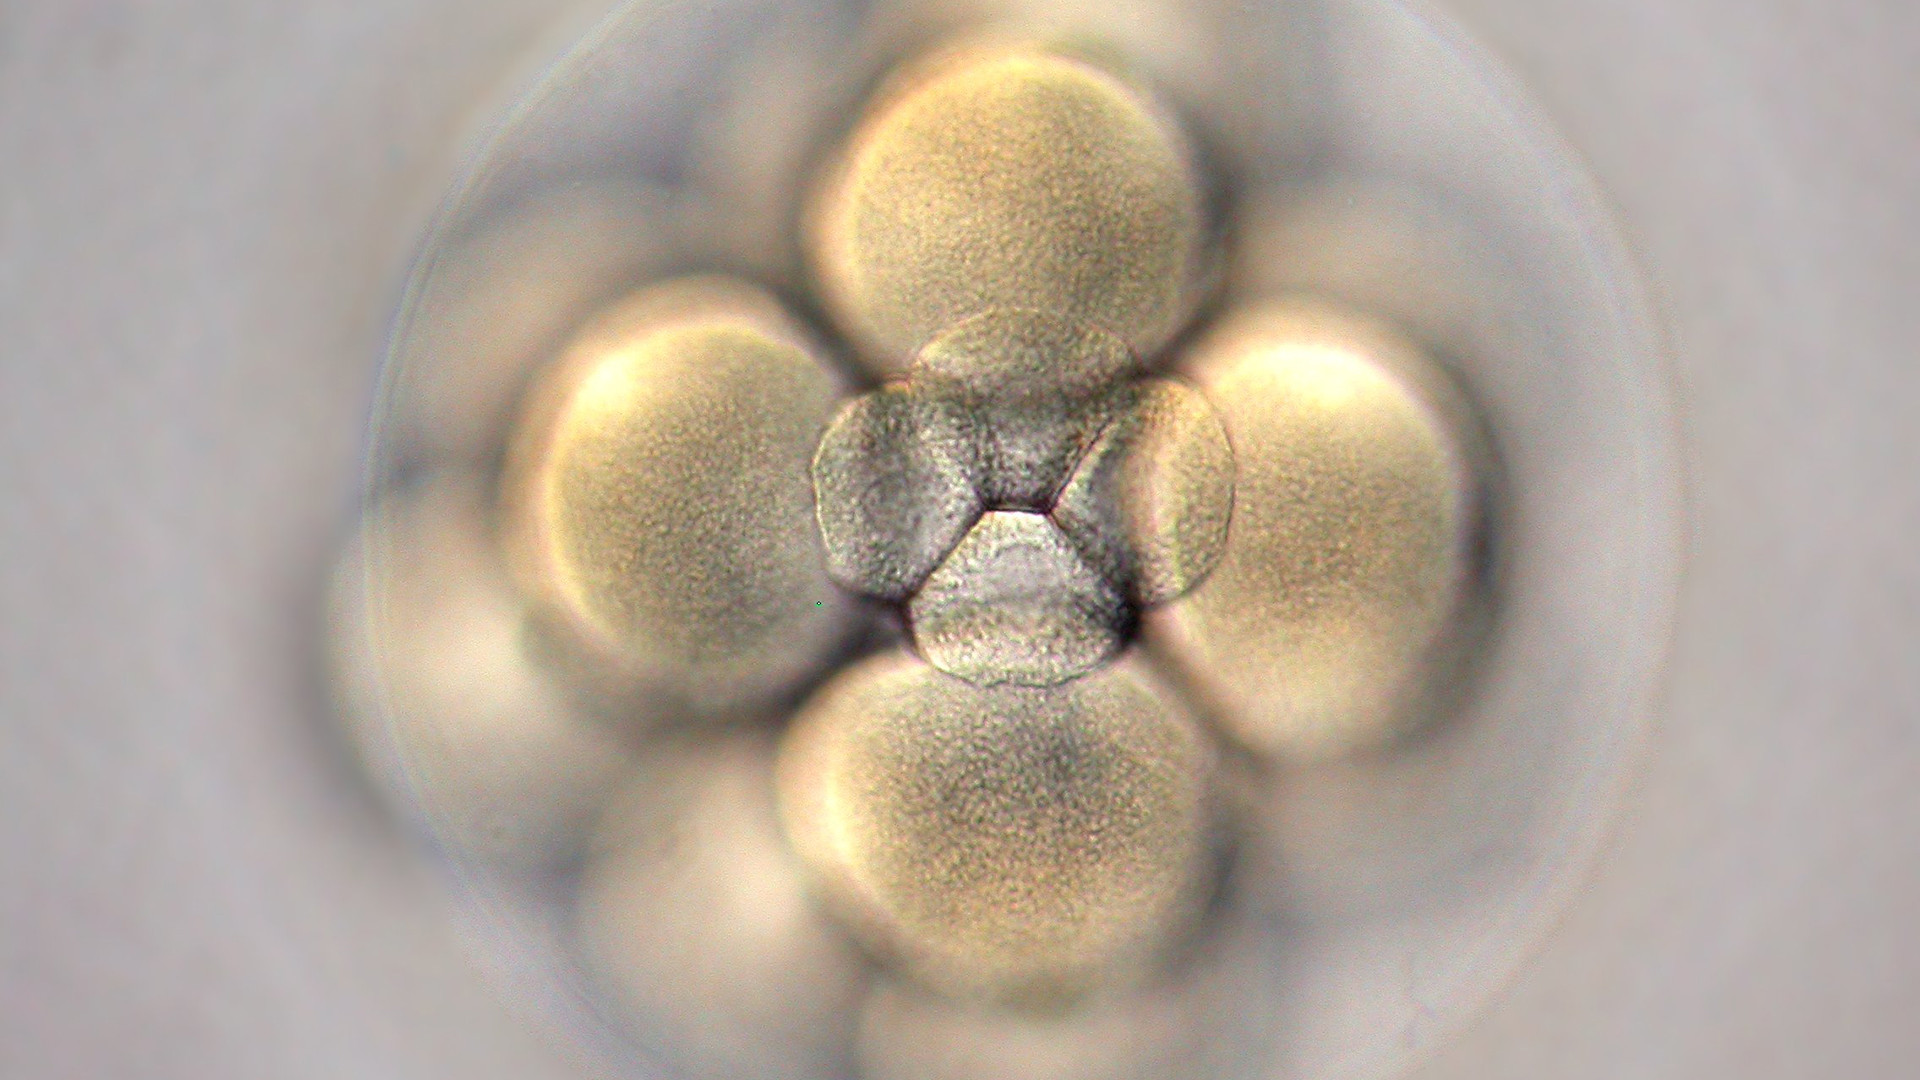 "Qu’est-ce qu’un embryon? Un ensemble de cellules vivantes ou une personne humaine qui se développe?" (Photo: flickr/nelas/CC BY-SA 2.0)